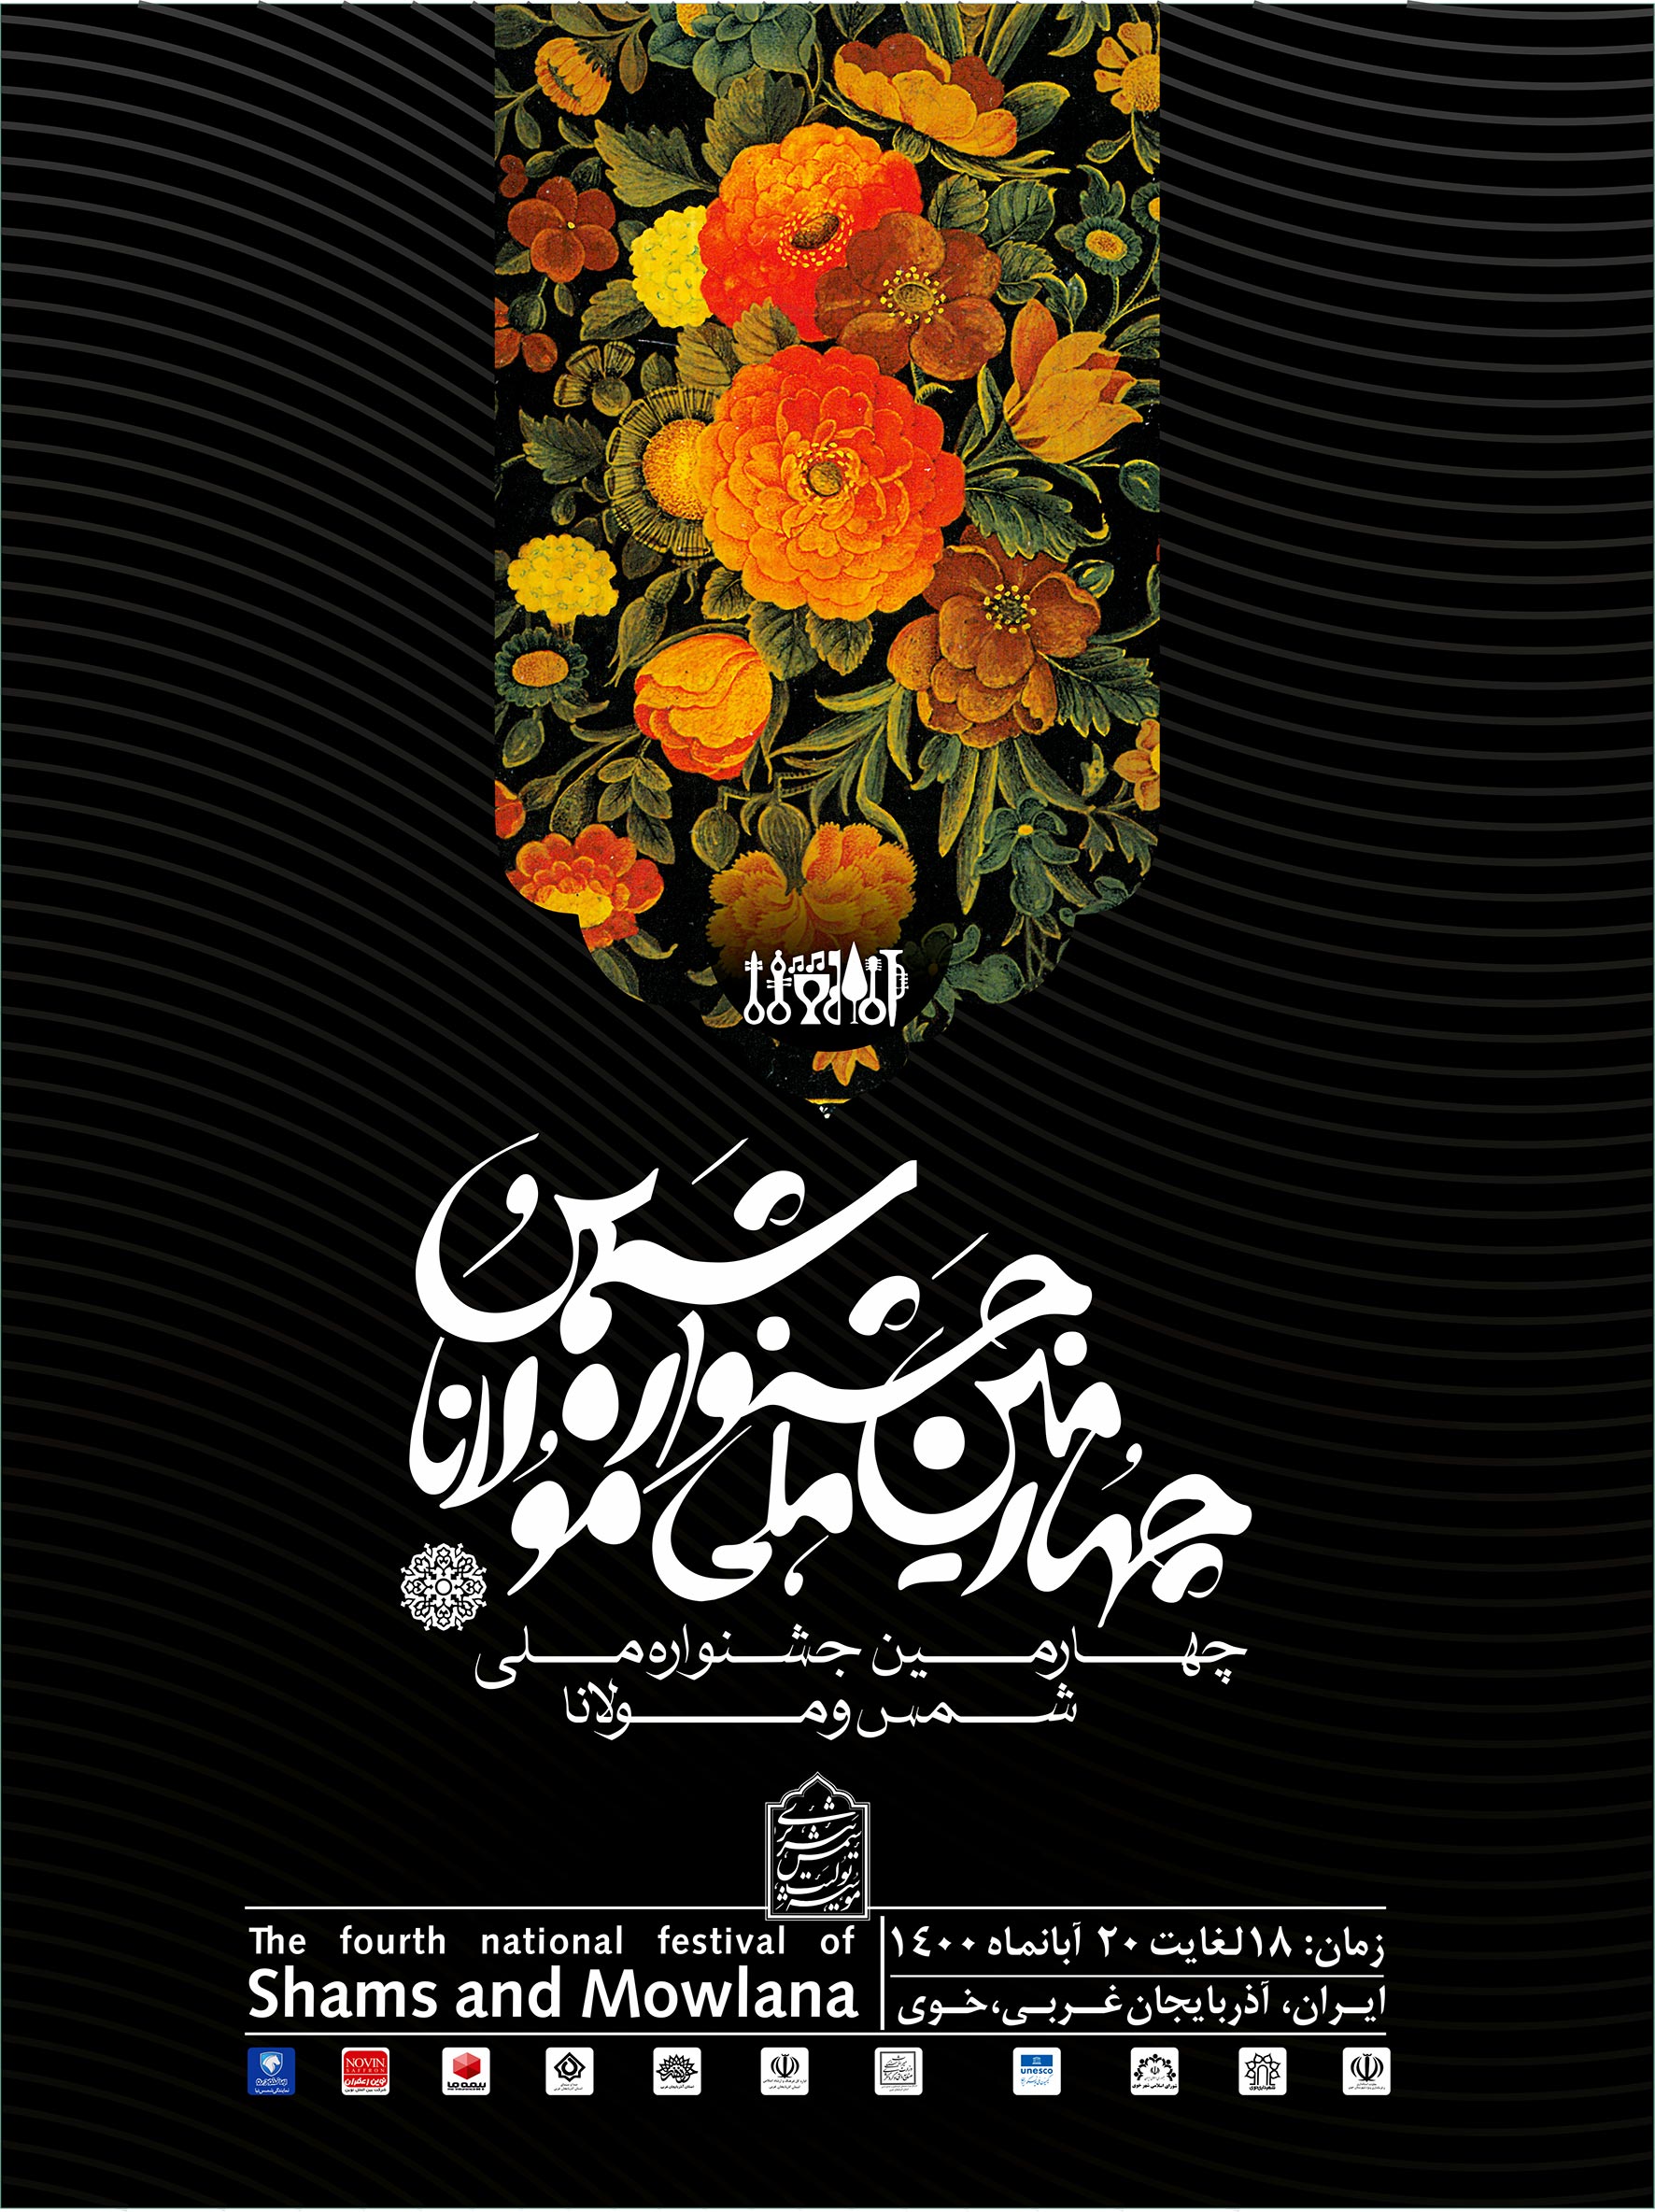 مراسم افتتاحیه چهارمین جشنواره ملی شمس و مولانا